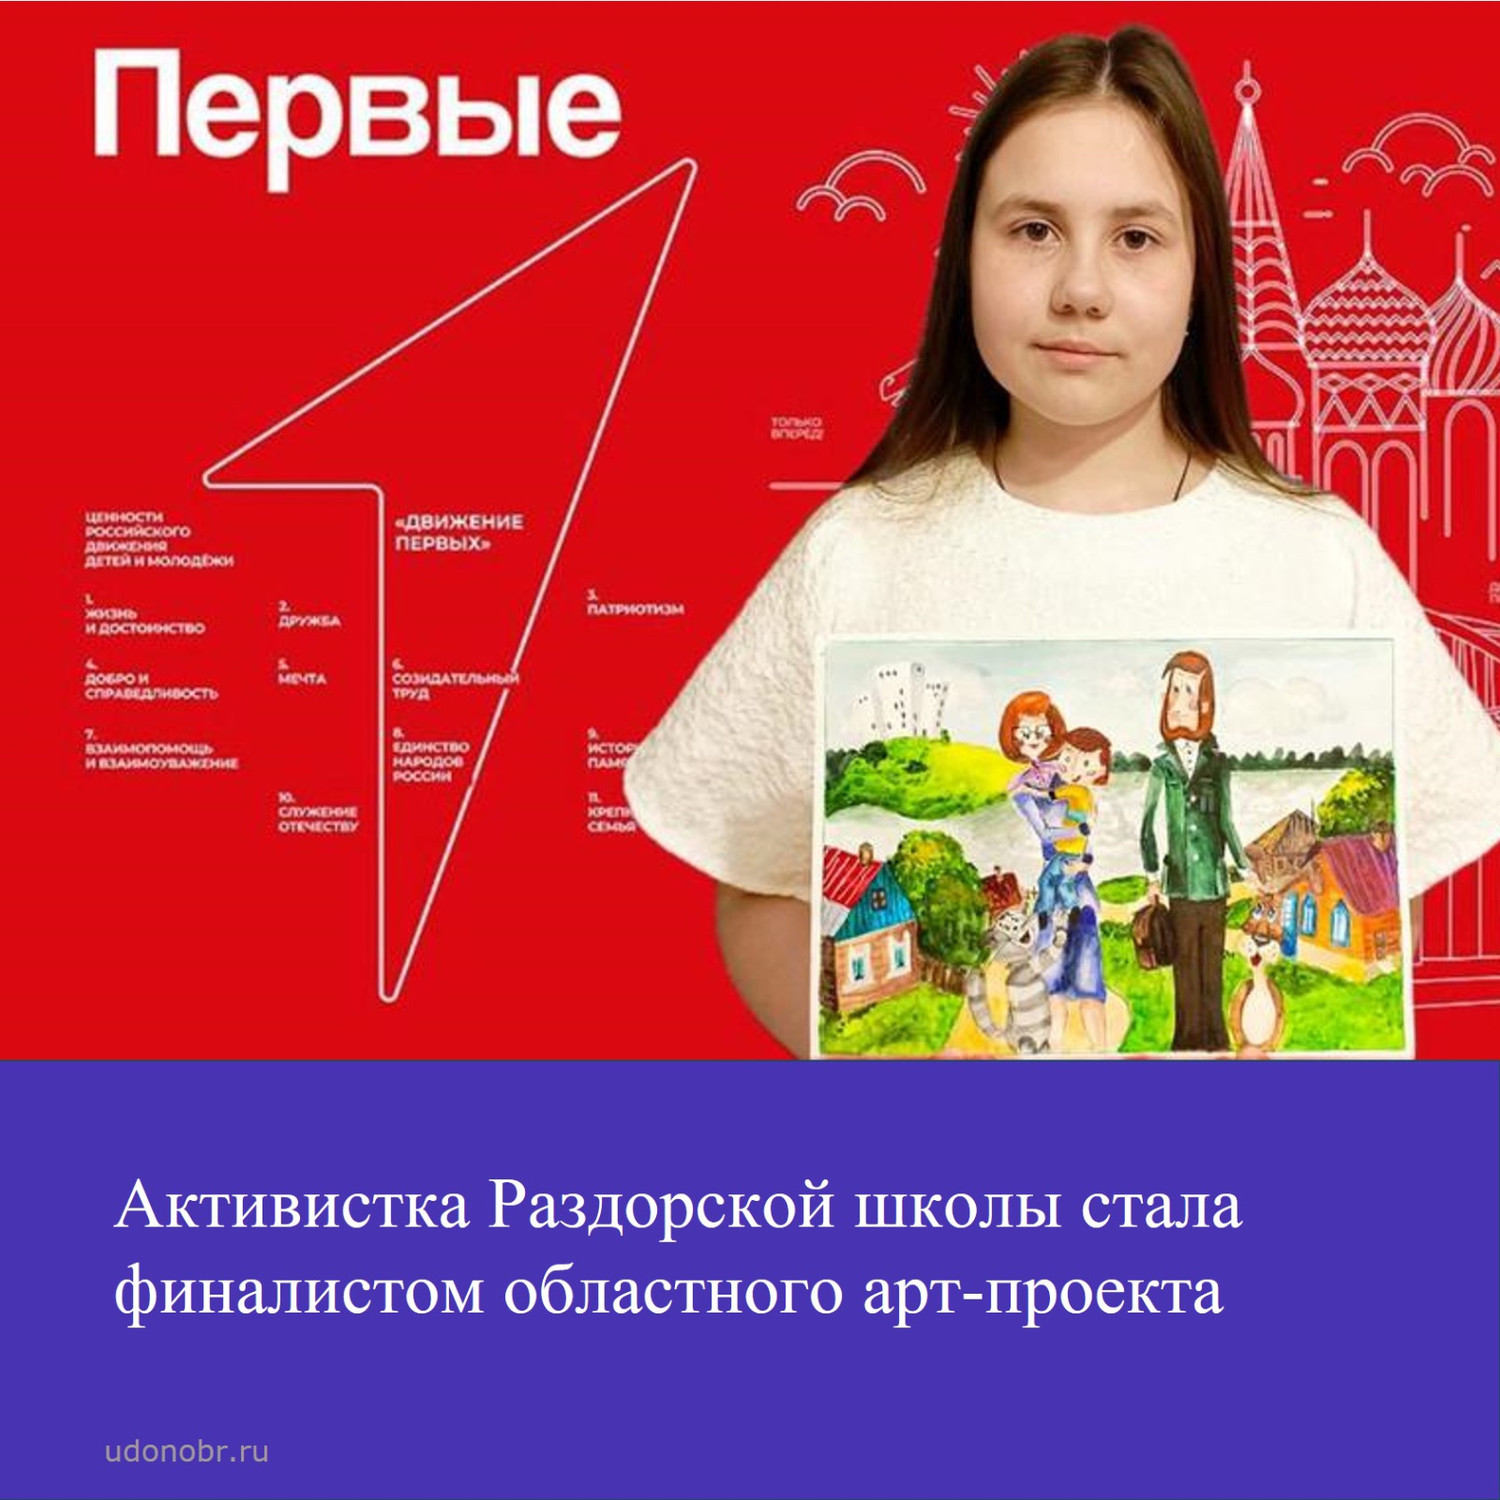 Активистка Раздорской школы стала финалистом областного арт-проекта